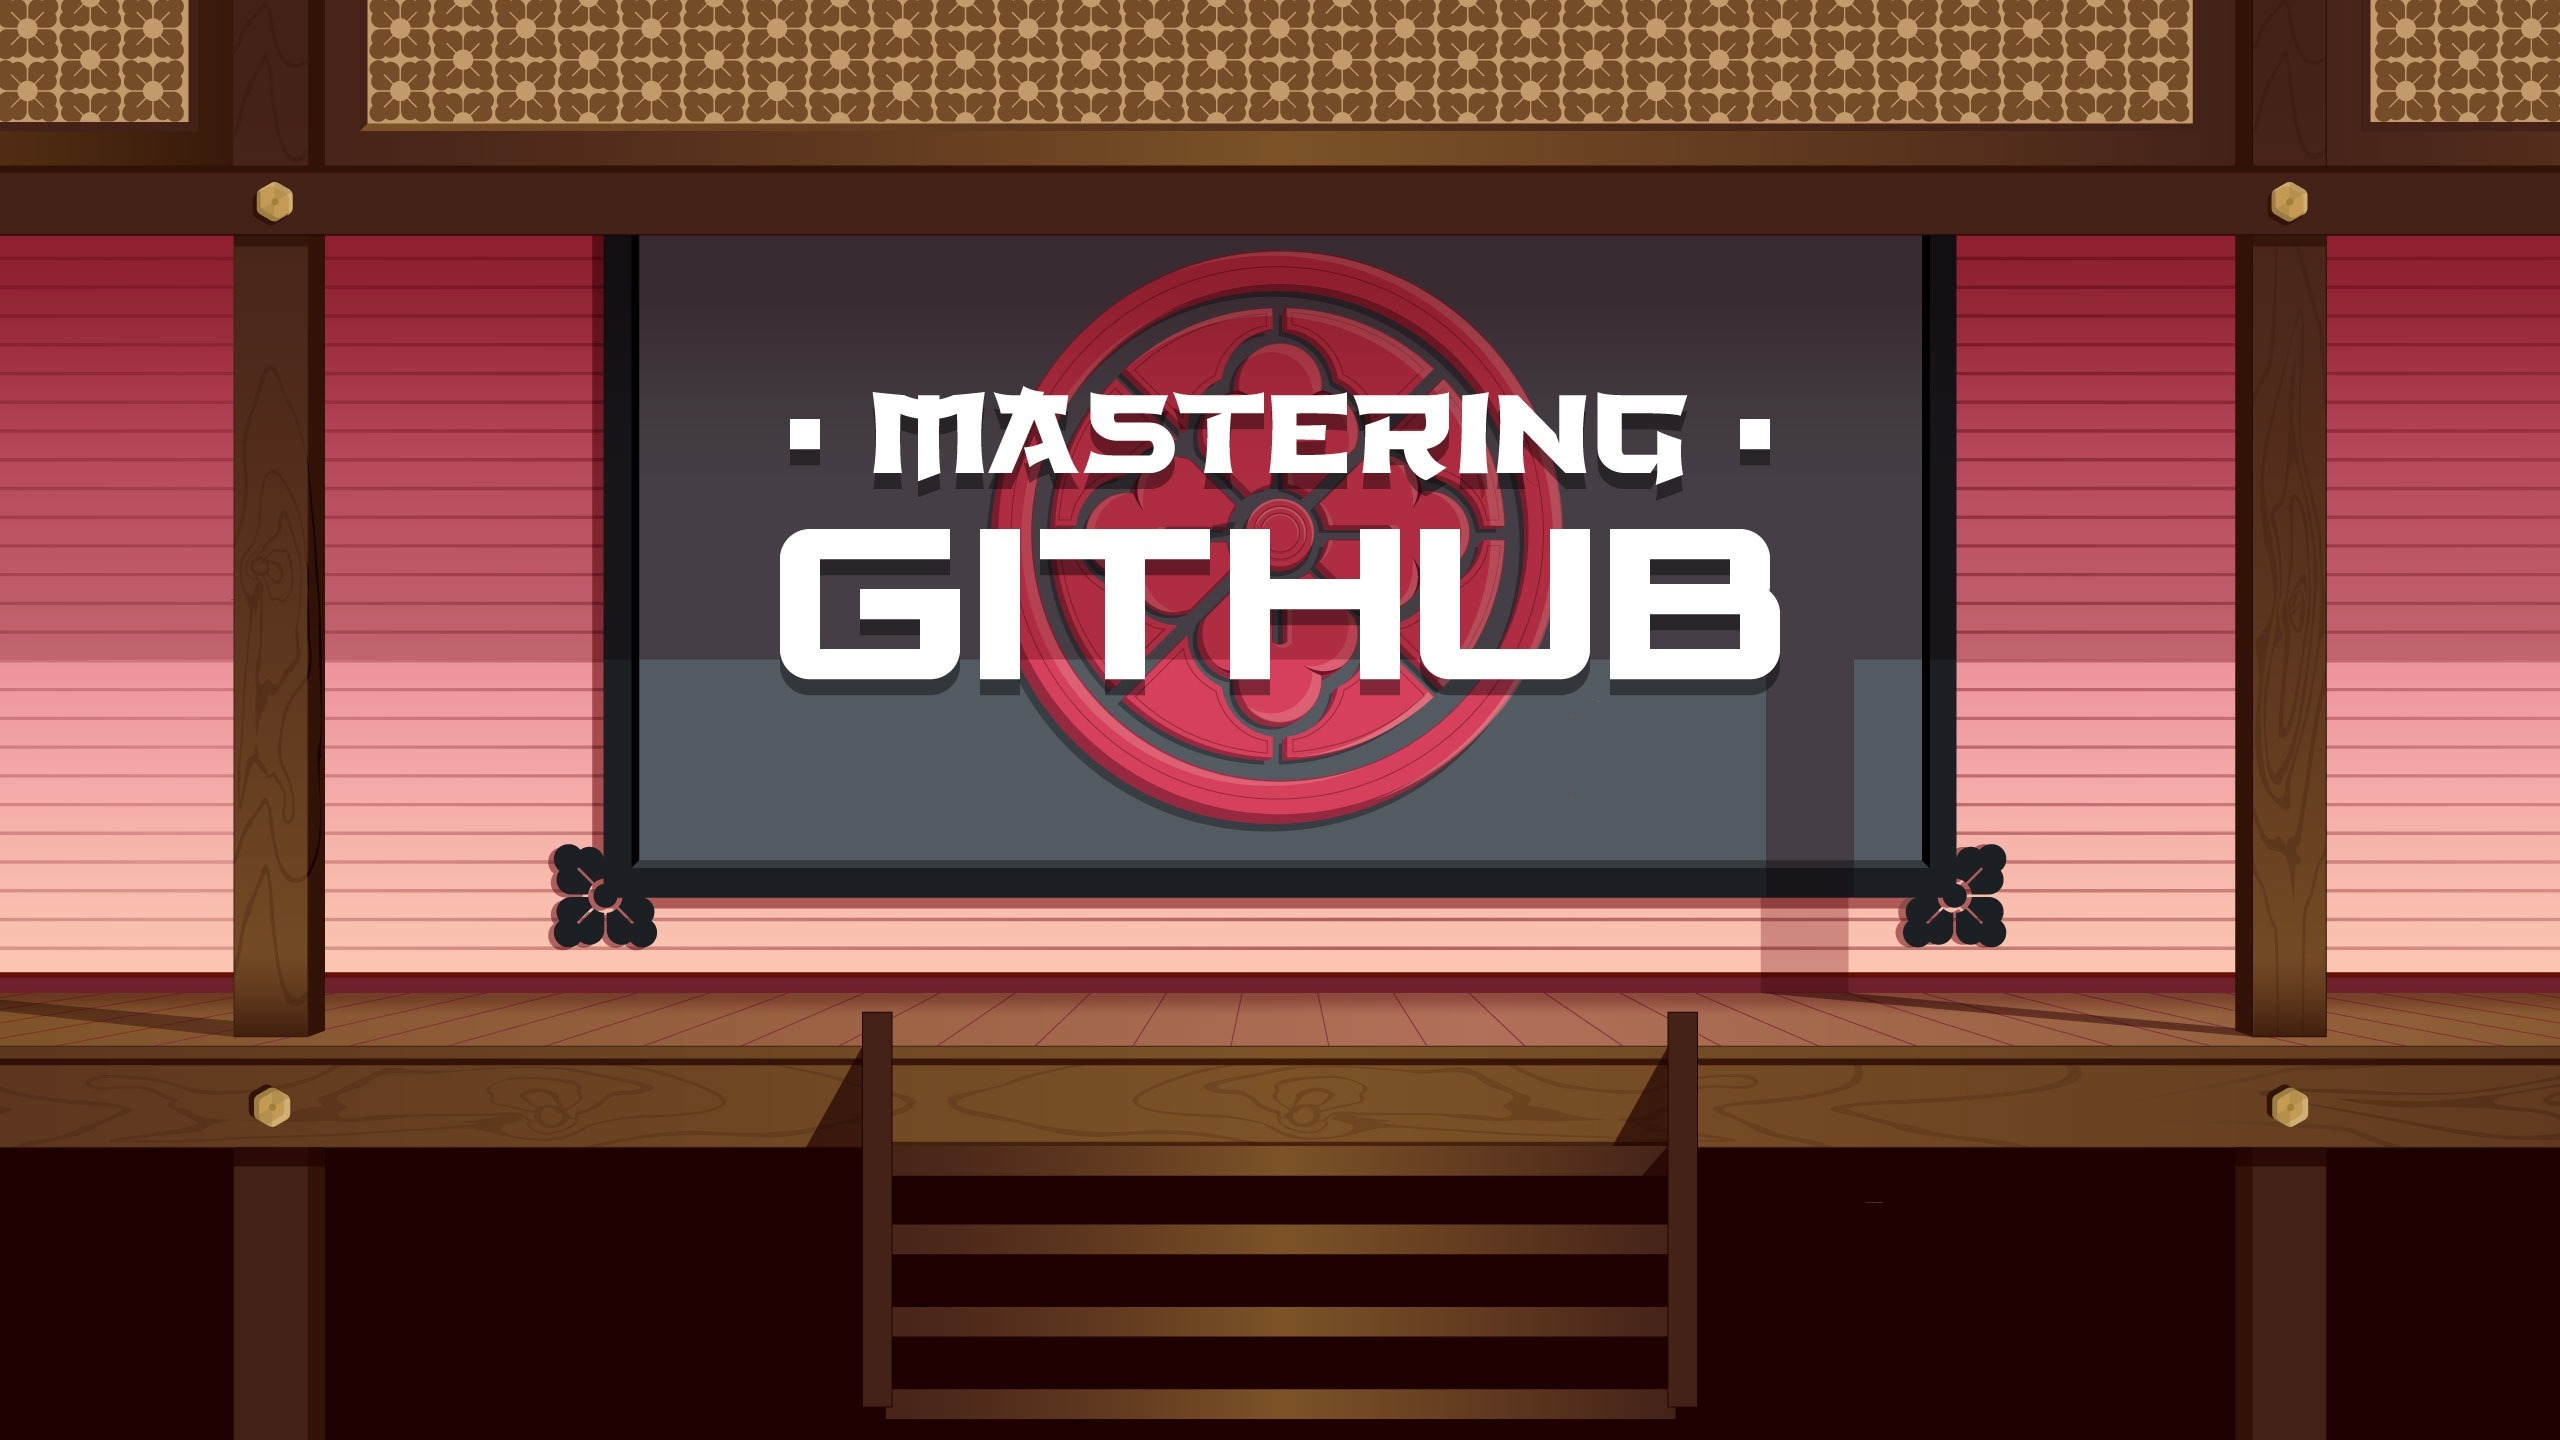 3. Mastering Github